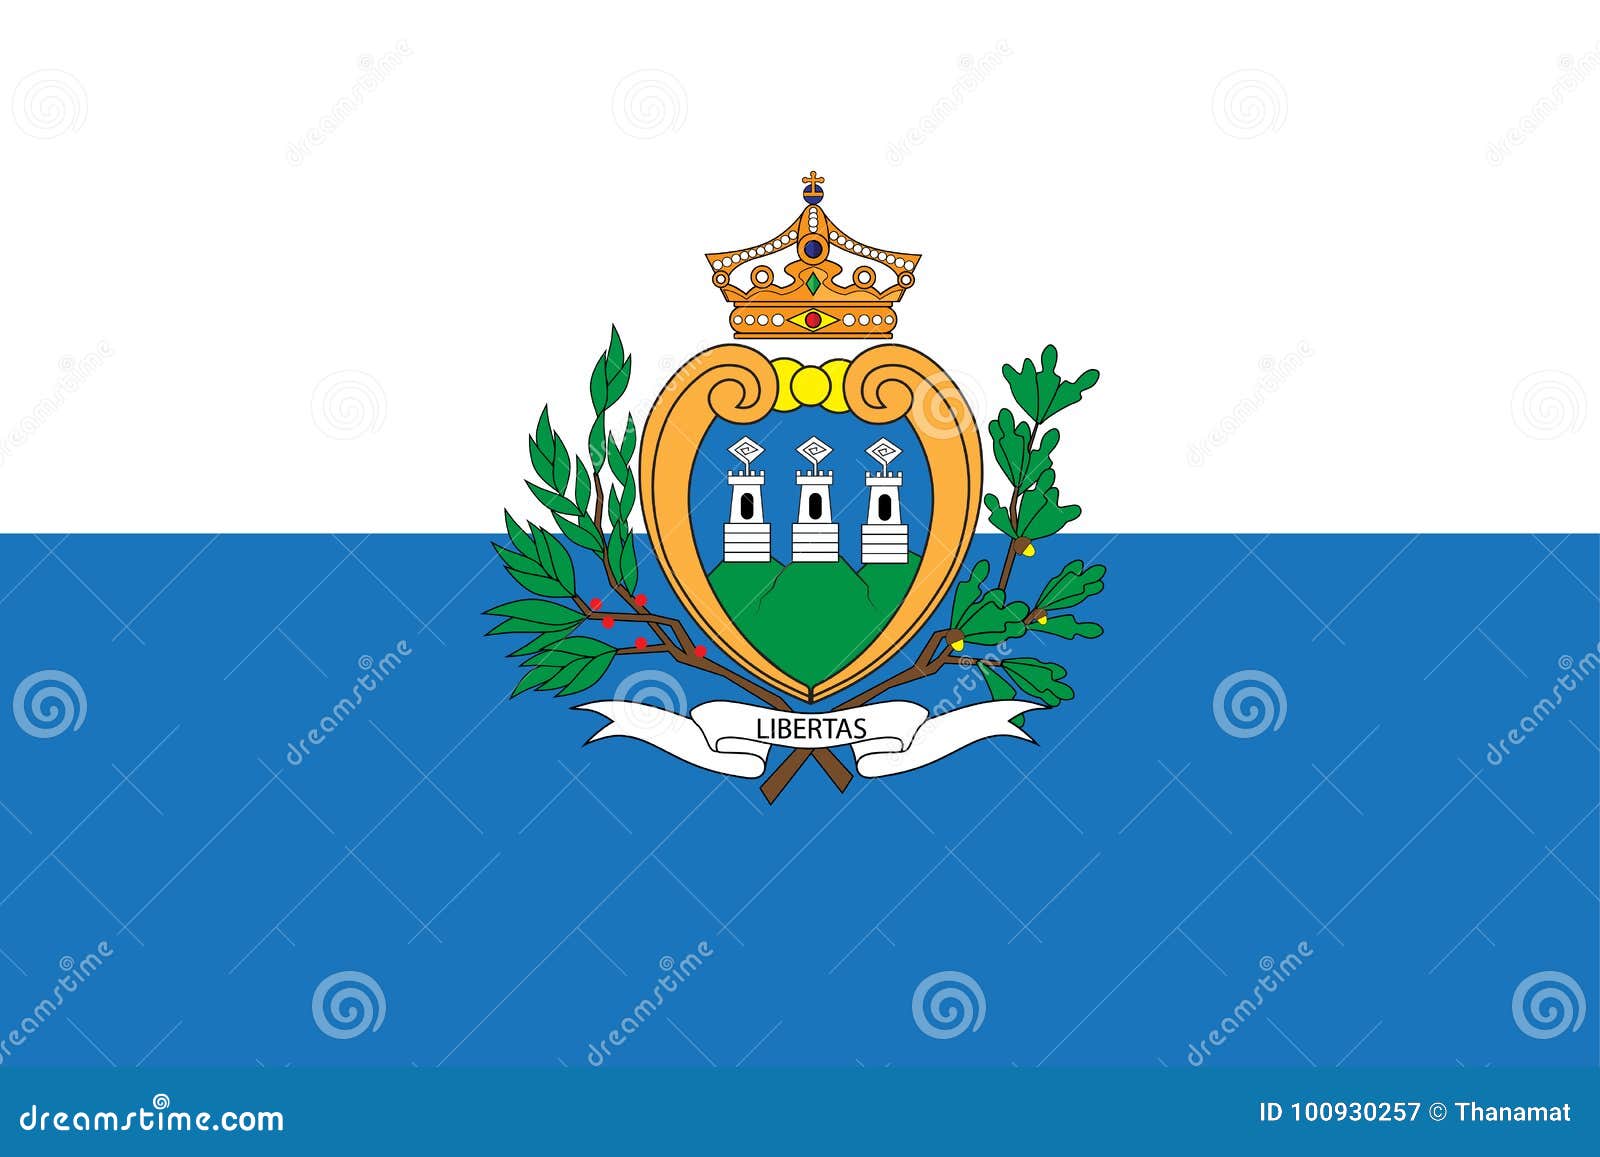 Флаг сан марино. Сан Марино флаг и герб. Сан Марино флаг 1914. Флаг страны Сан Марино. Флаг Сан Марино флаг.